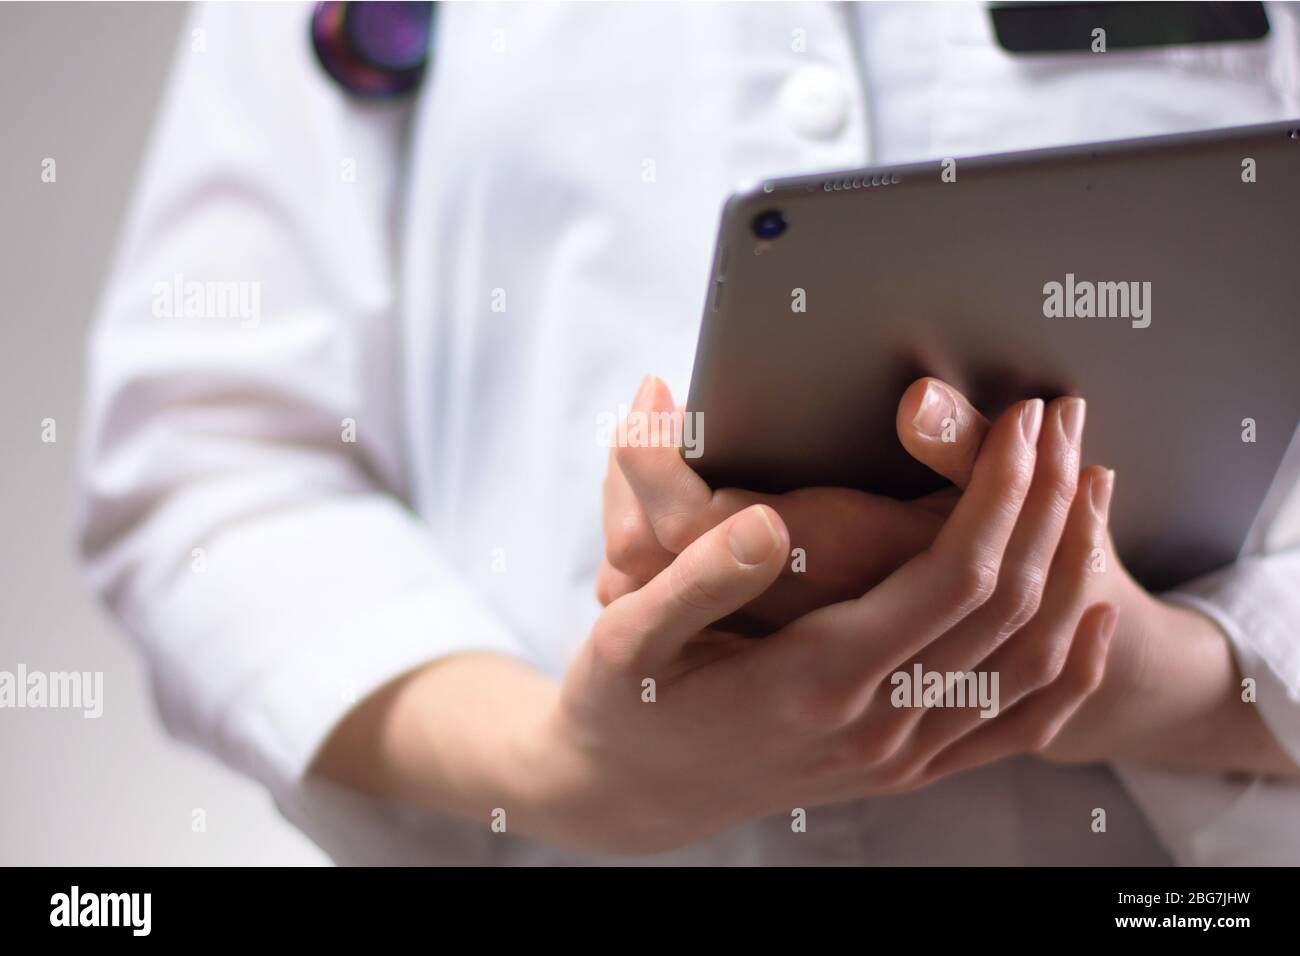 Tablet nelle mani di un operatore sanitario da vicino. Stetoscopio, stemma e stemma bianchi visibili sullo sfondo. Mani di infermiere o PA u Foto Stock